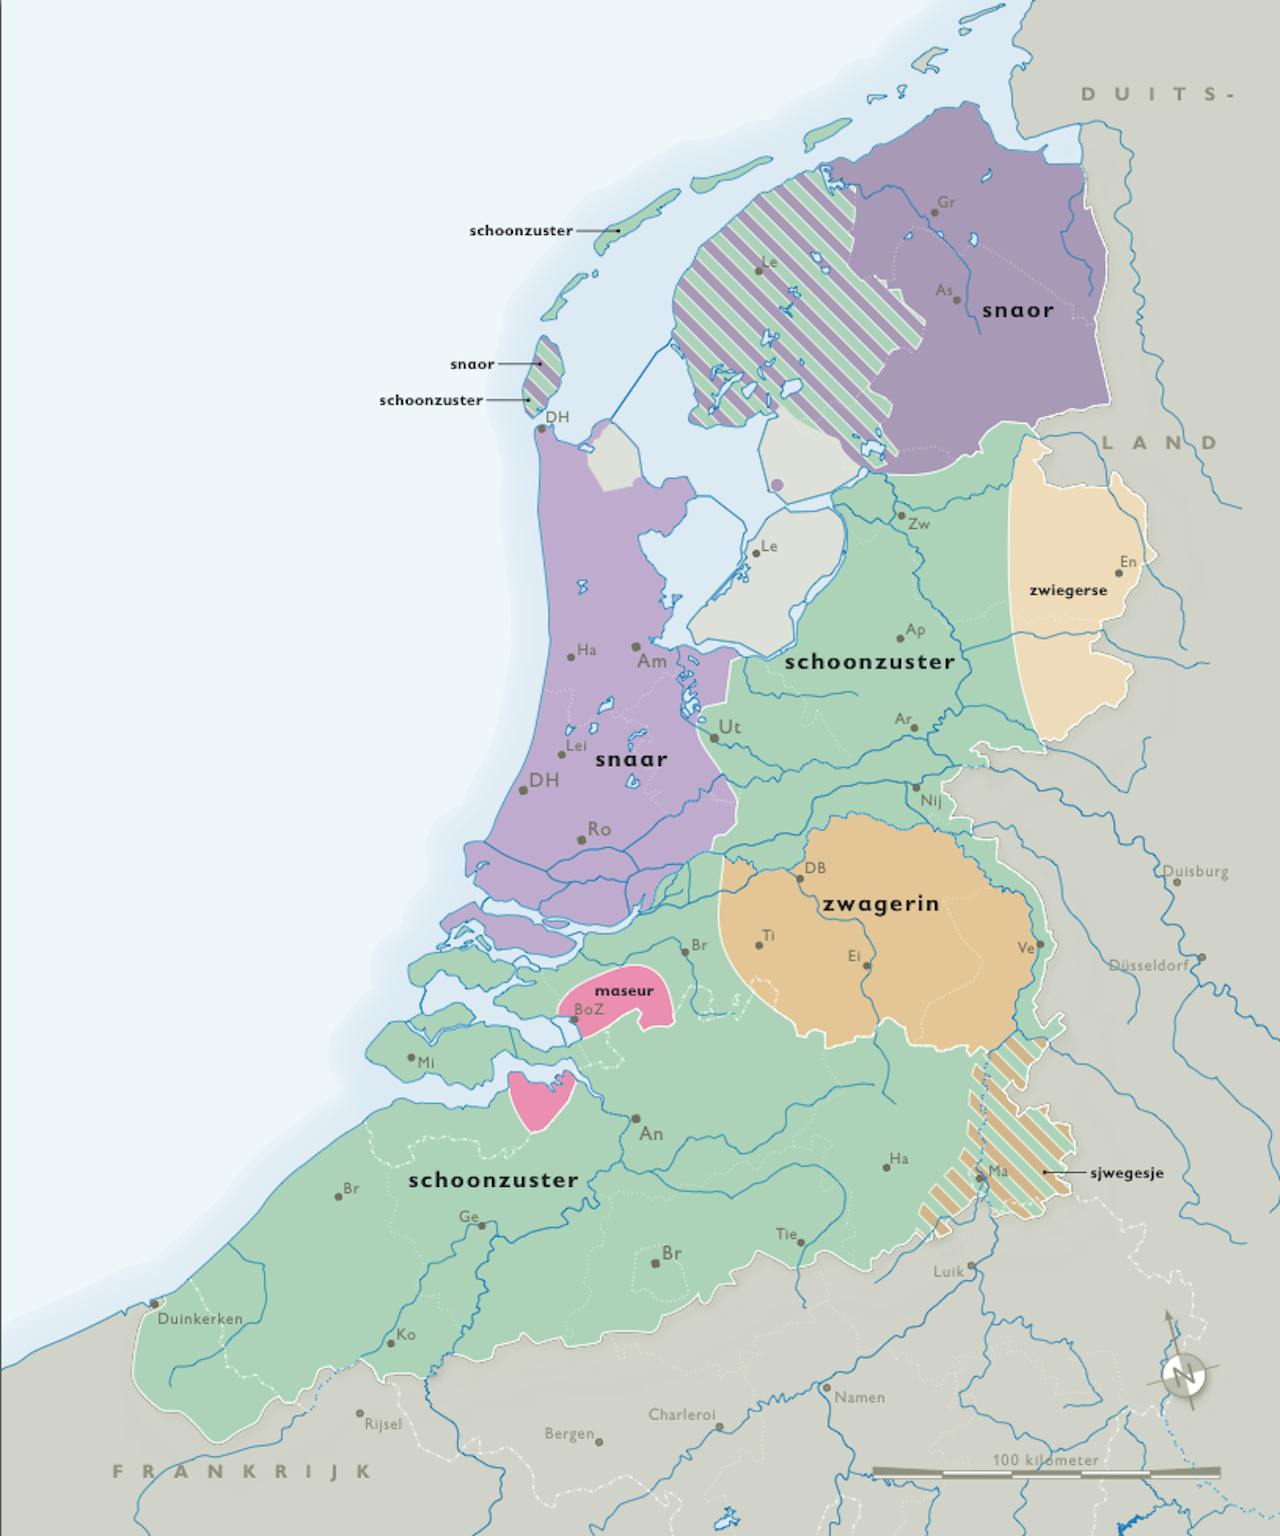 Een kaart van Nederland die laat zien hoe verschillende synoniemen van 'schoonzus' verspreid zijn. In dialecten van west- en noord-Nederland is dat vooral snaar of snoar. In het midden van ons land vooral 'schoonzuster'.